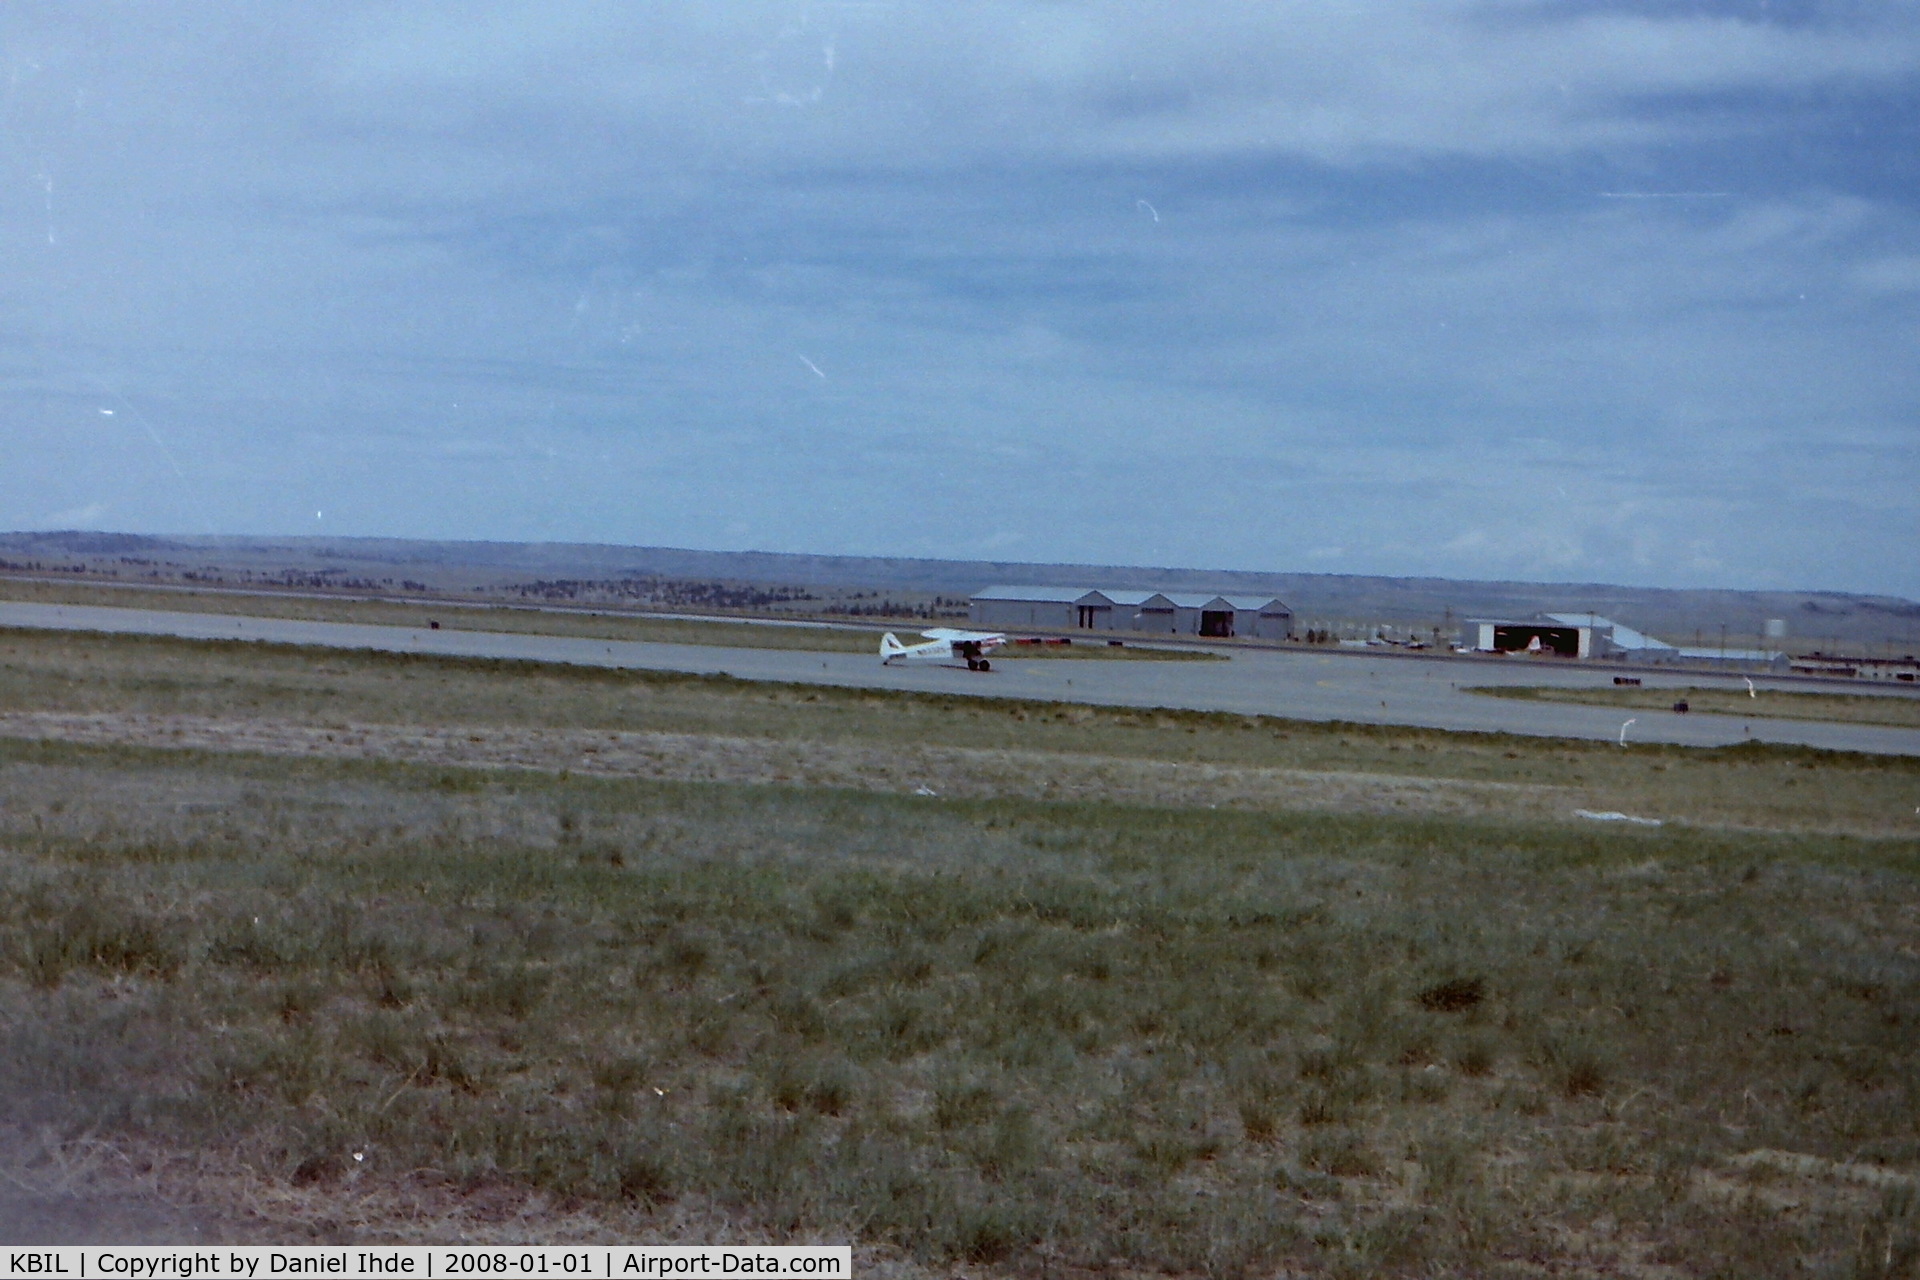 Billings Logan International Airport (BIL) - Piper Cub taxi's to 27R in June of 1981